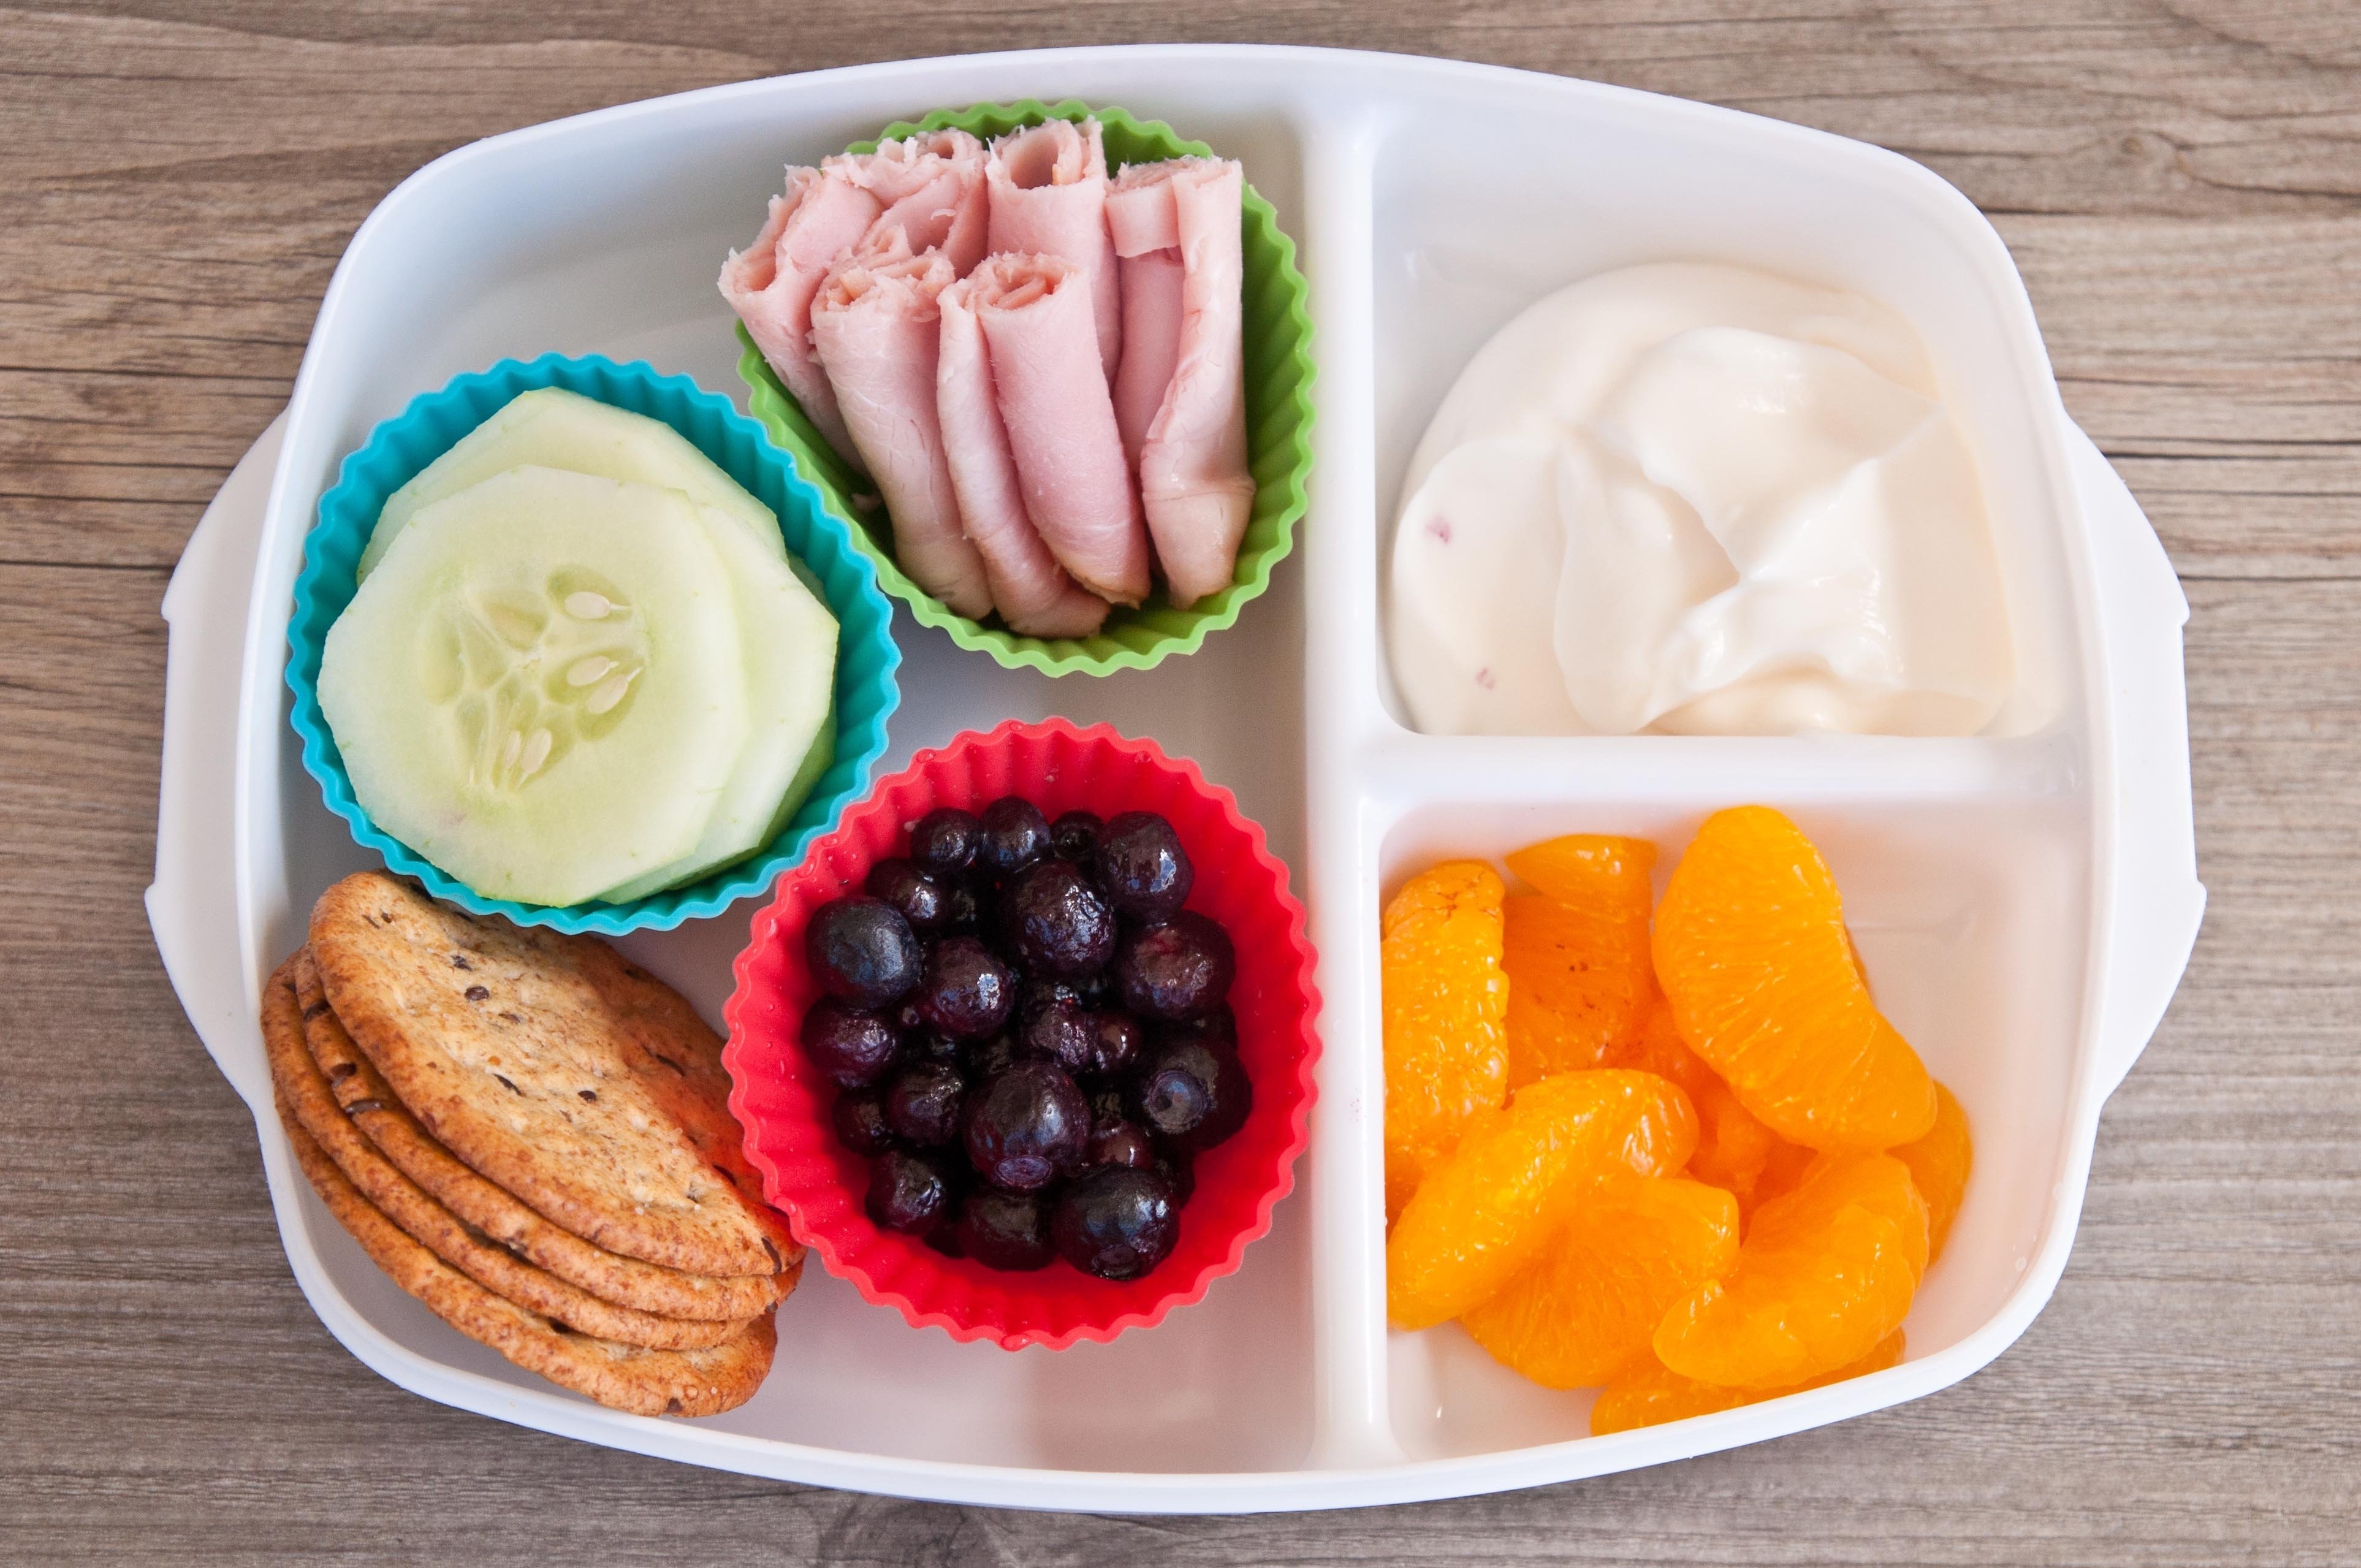 10 Best School Lunch Ideas For Kindergarten 2021